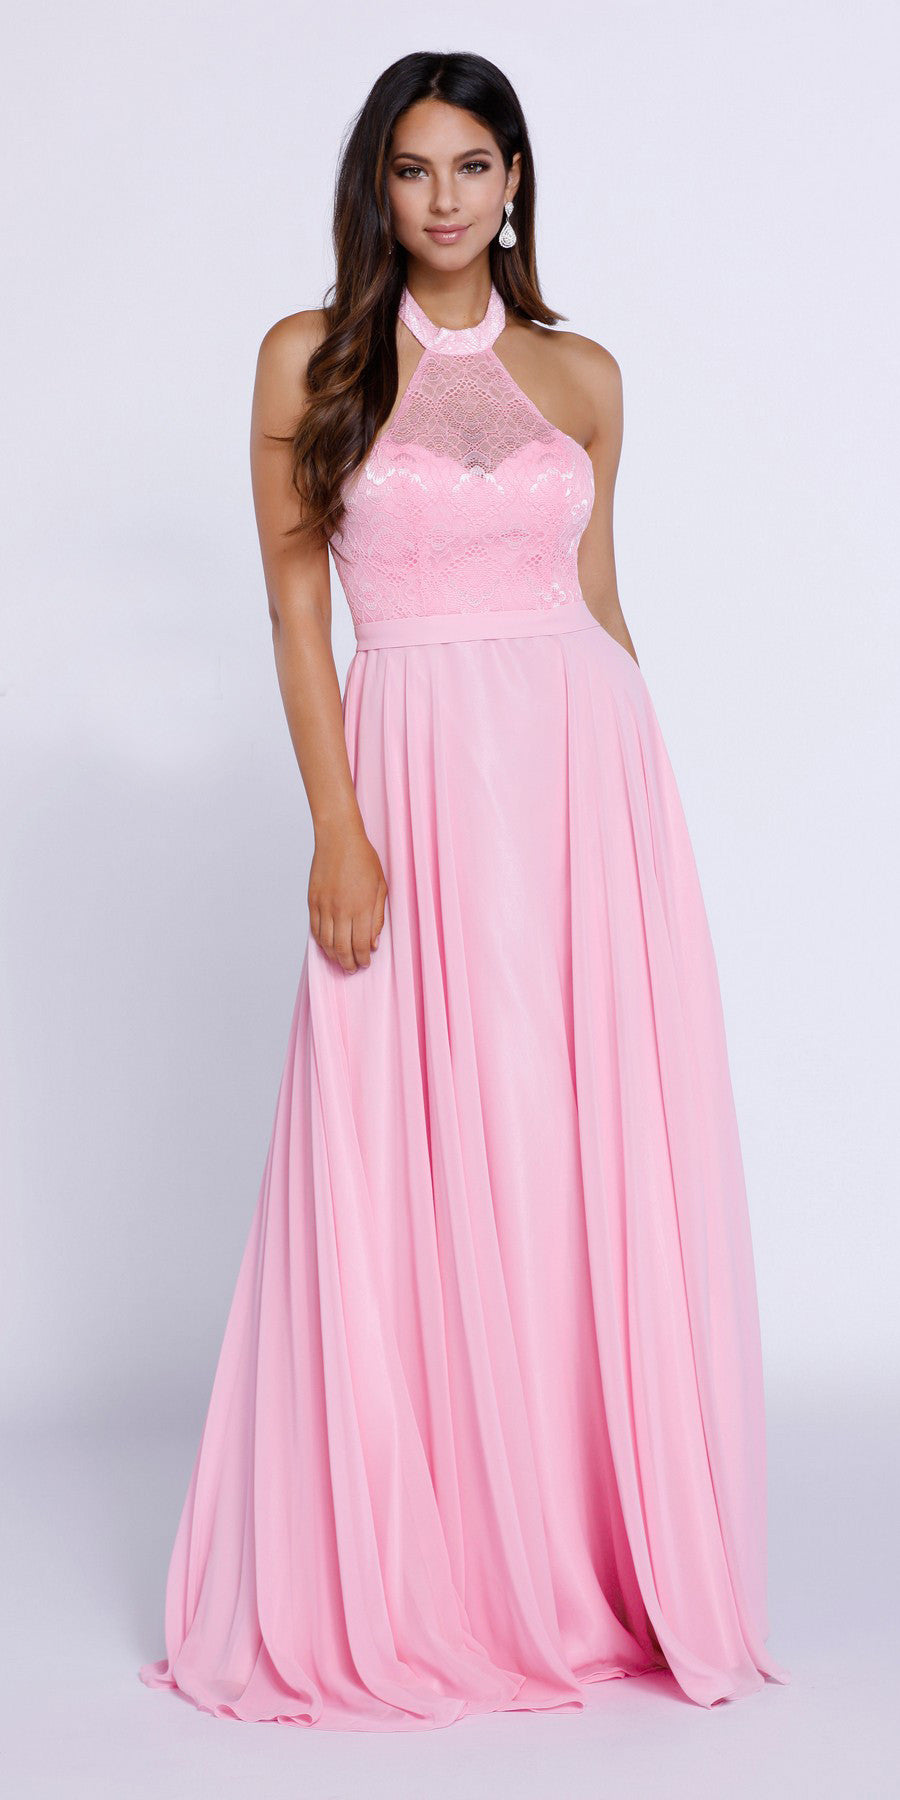 pink high neck dress